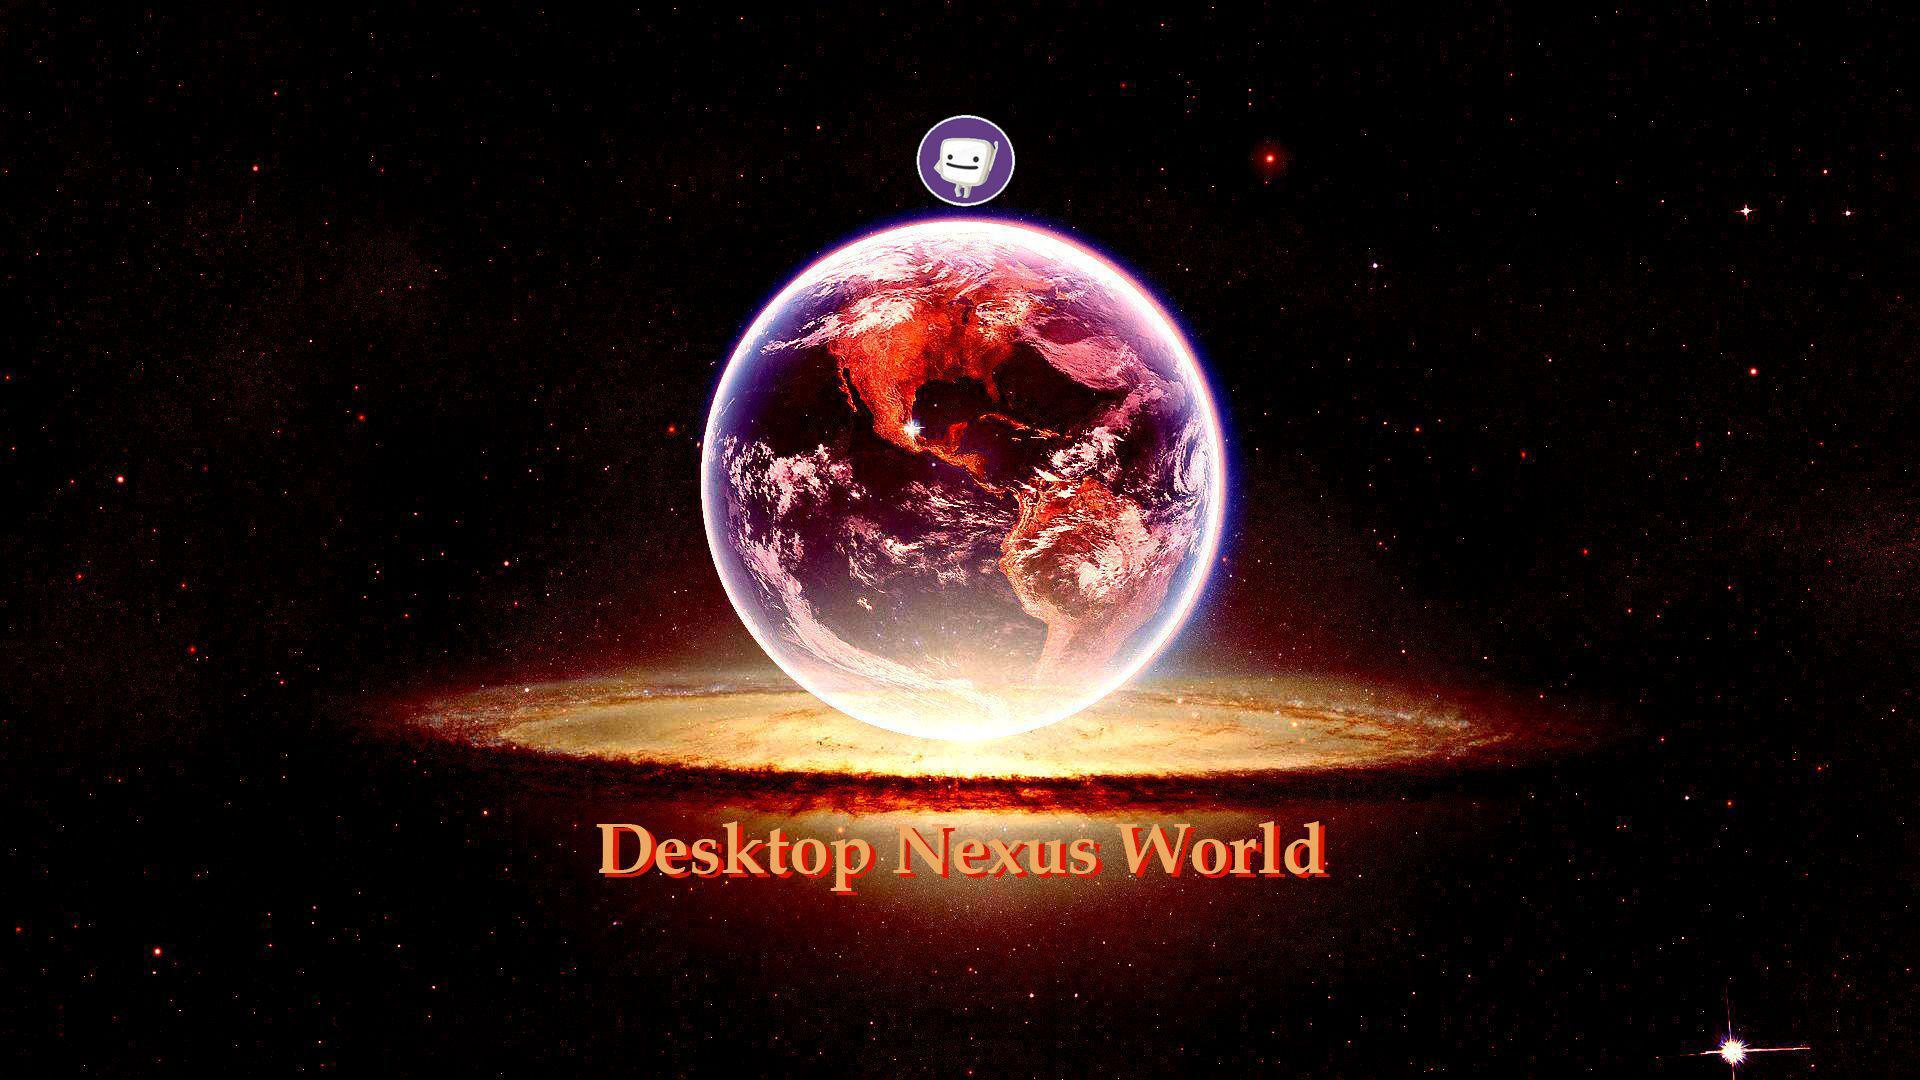 Desktop Nexus HD Desktop Wallpaper for Widescreen, High